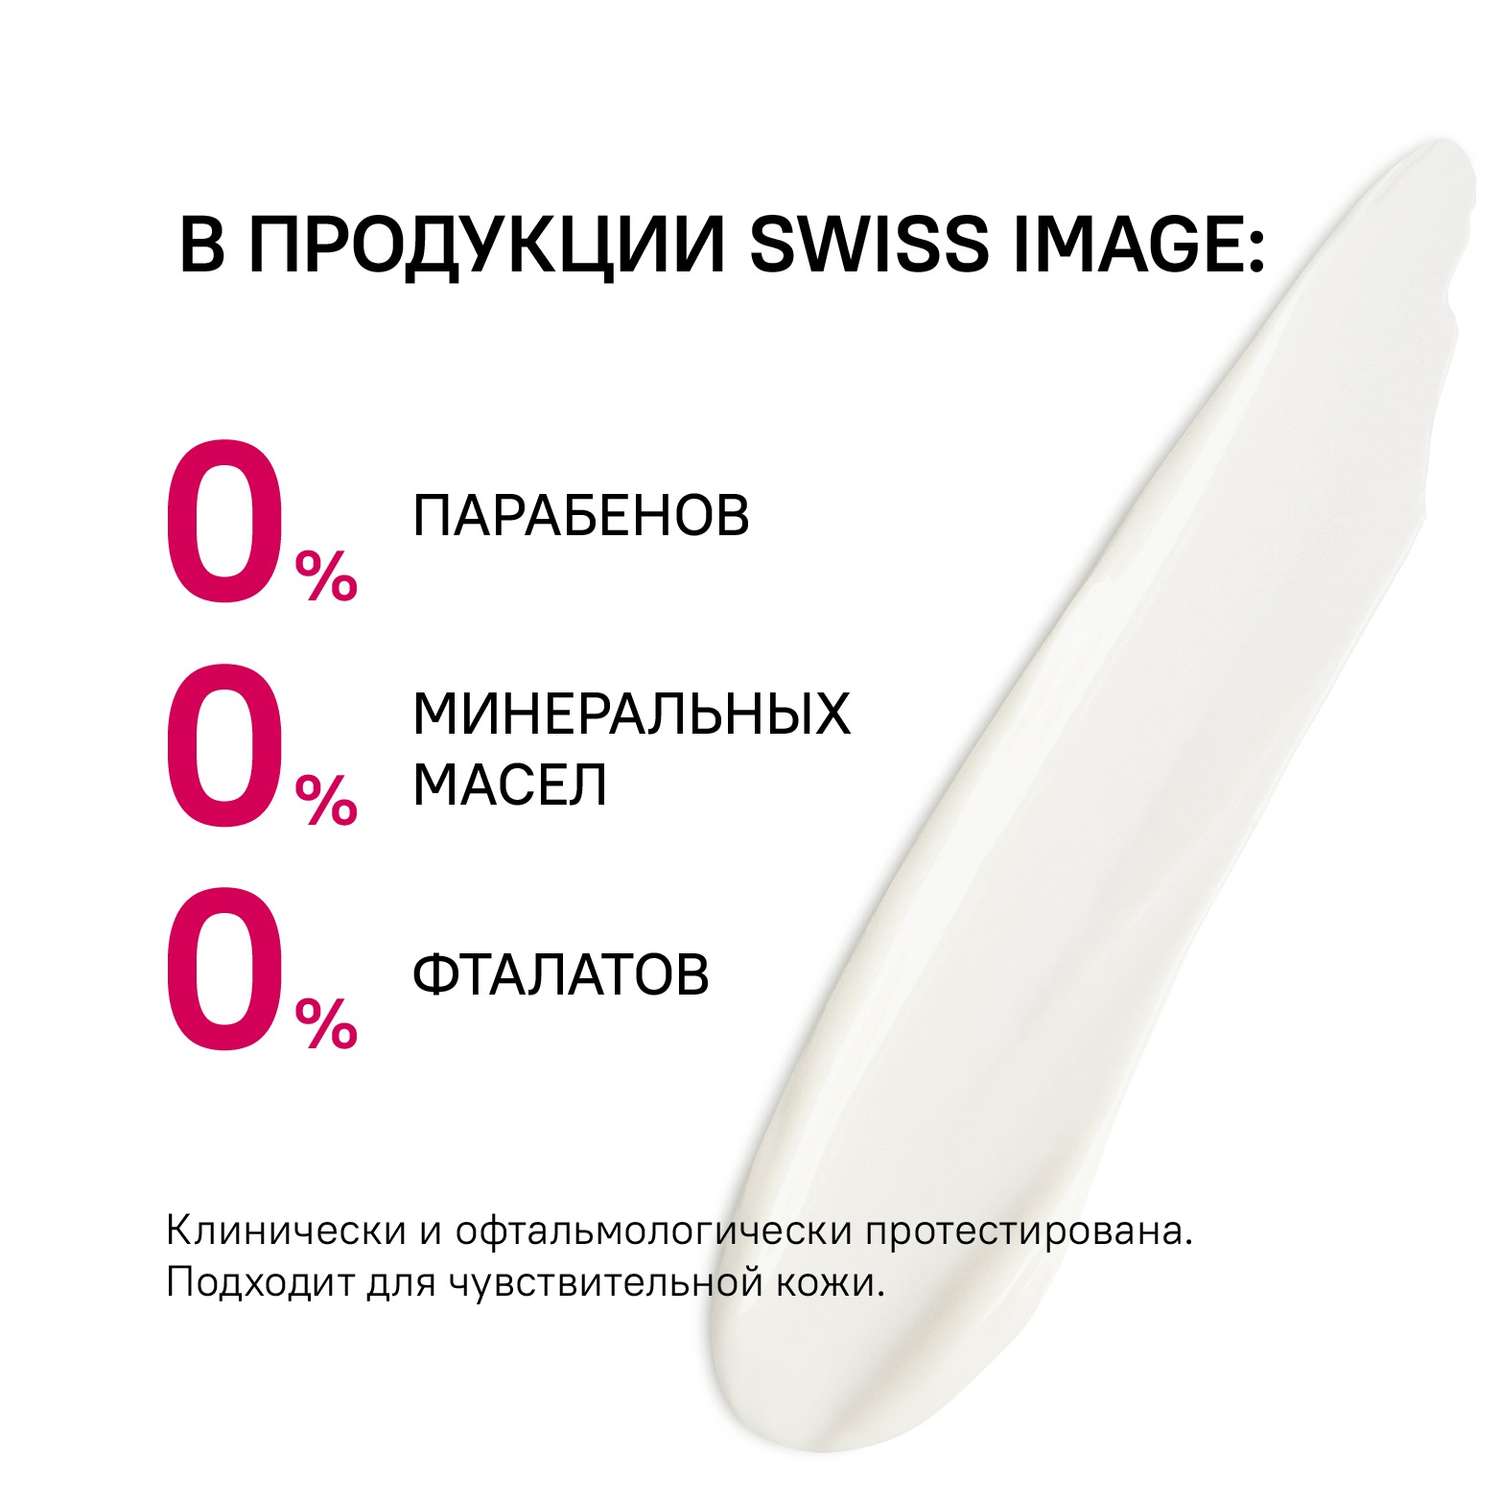 Дневной крем для лица Swiss image против морщин 36+ Антивозрастной уход 50 мл - фото 9